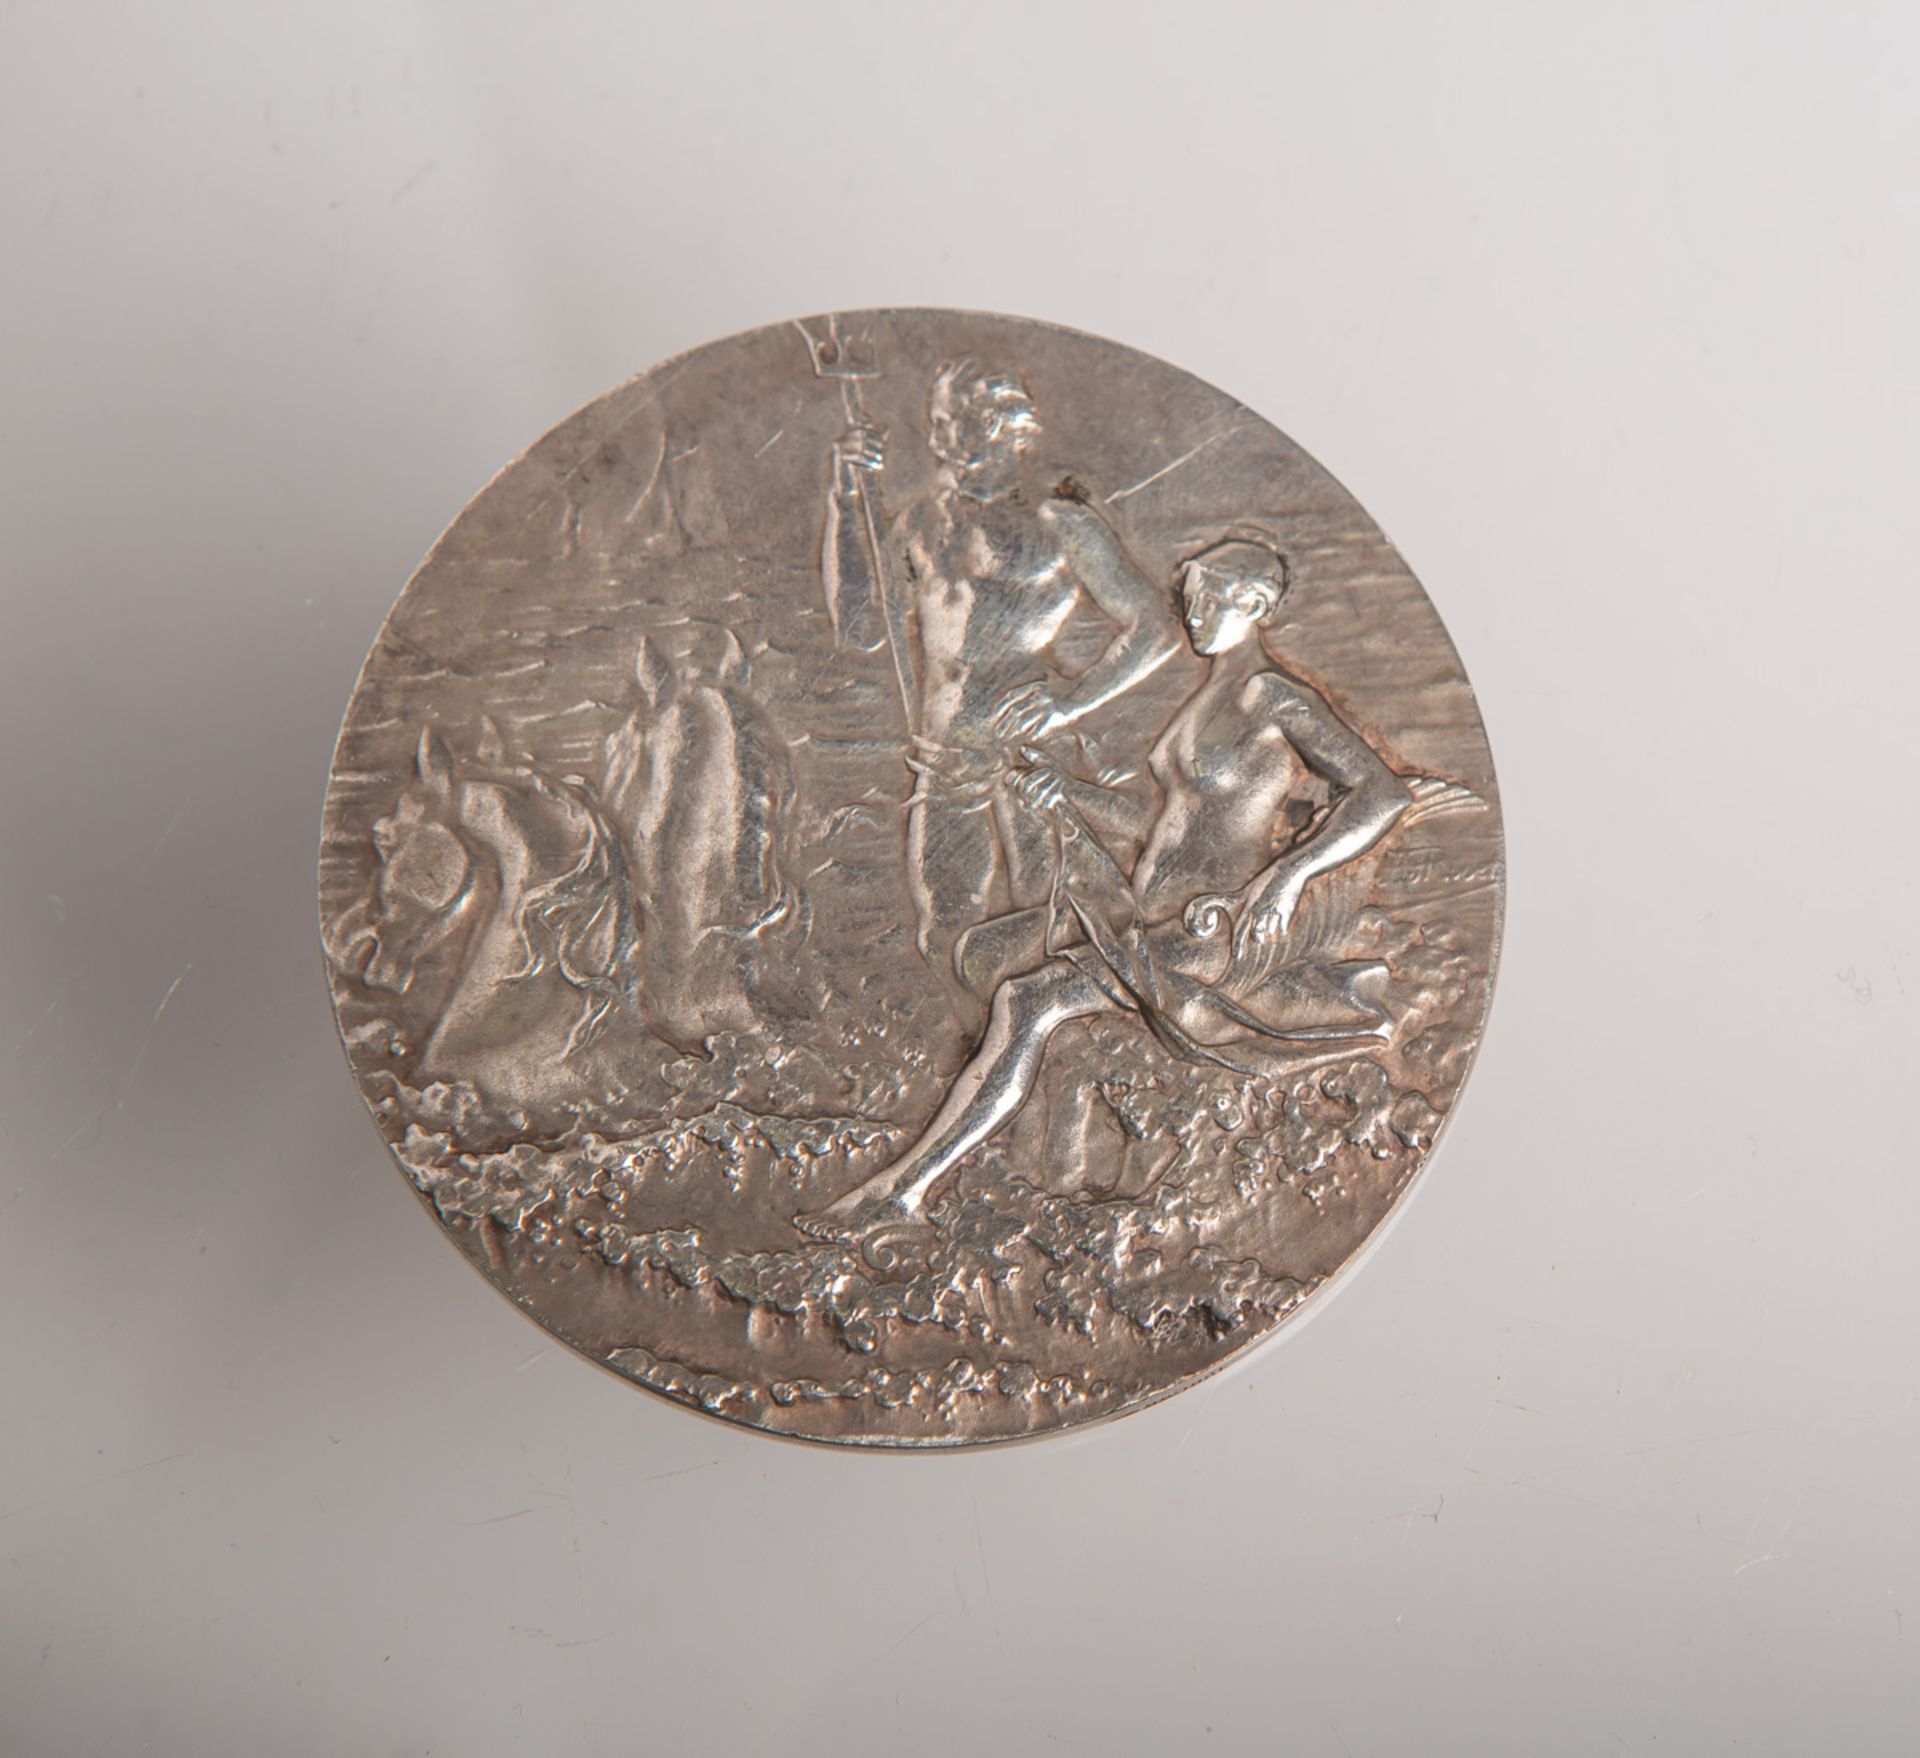 Gr. Medaille m. Neptun-Darstellung (wohl um 1900)